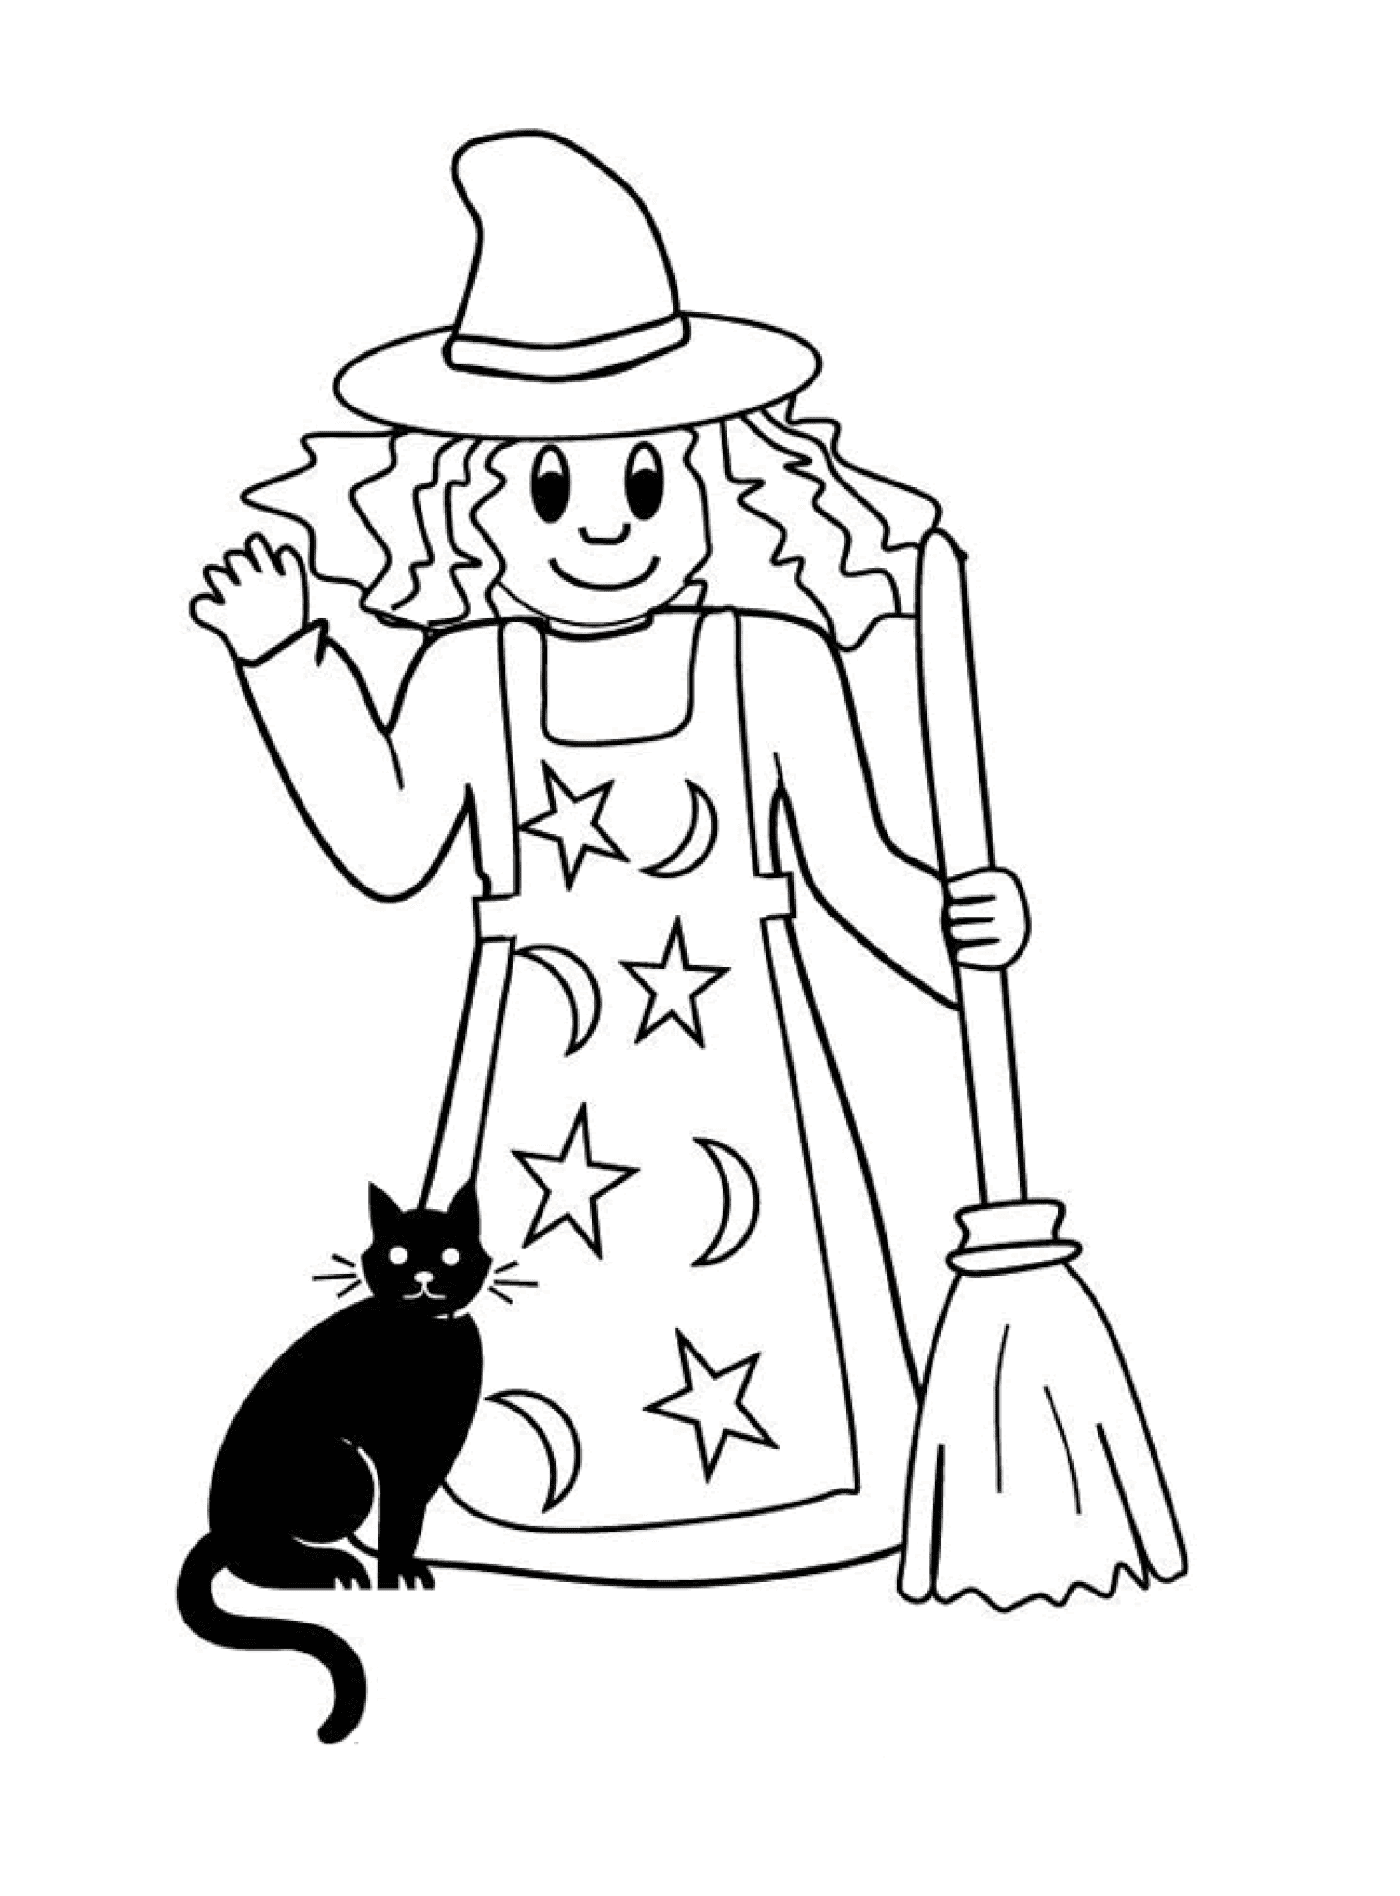  单纯的巫婆 伴着她的黑猫 